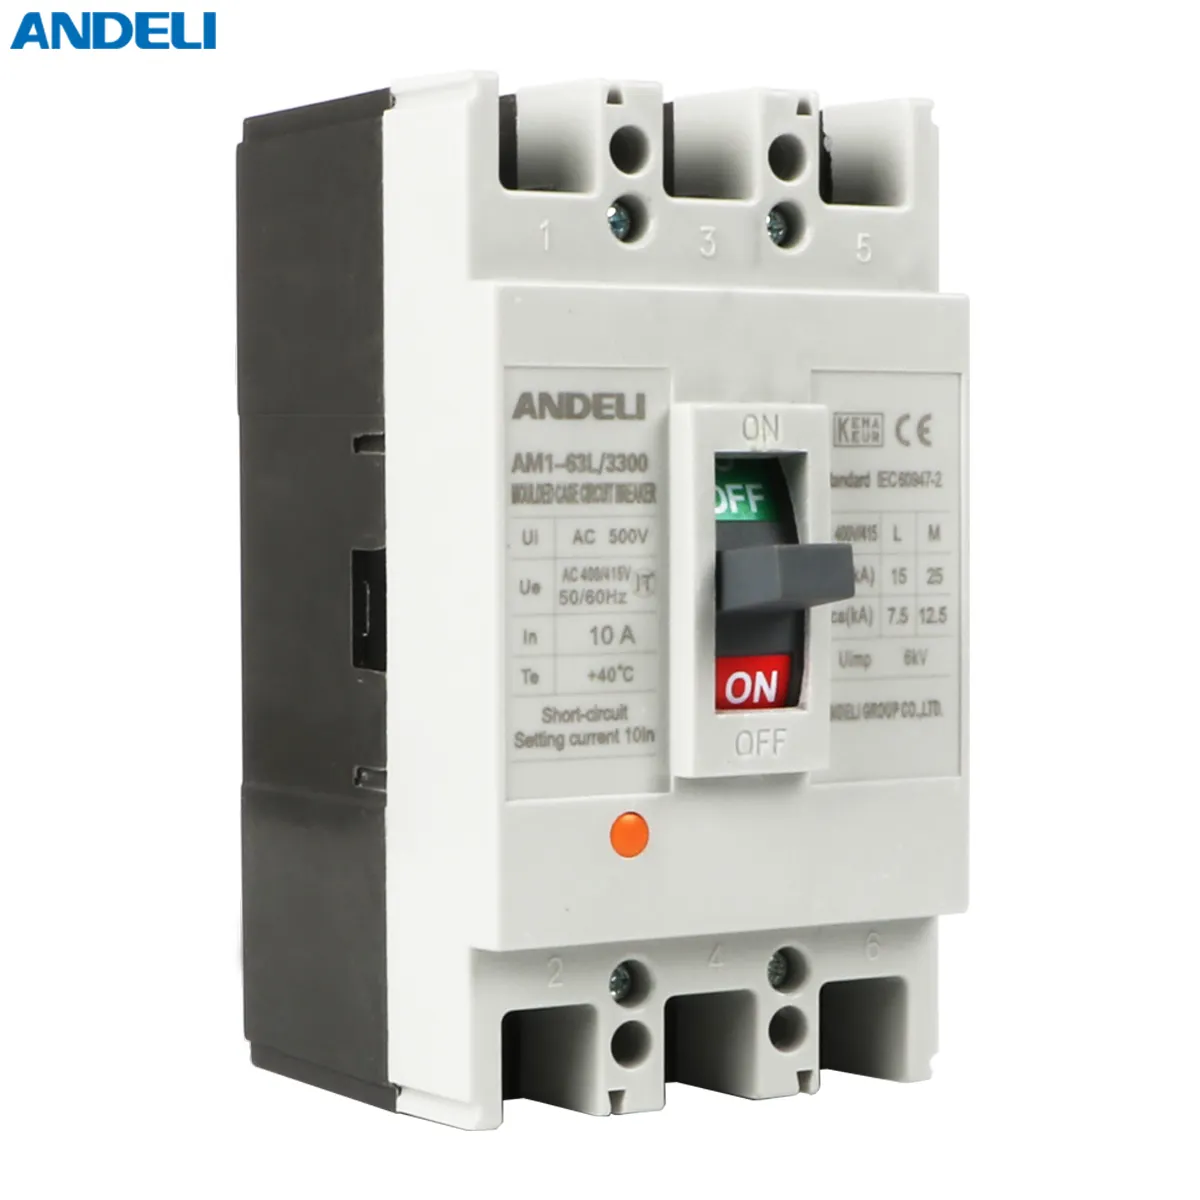 ANDELI 6A 10A 16A 20A 25A 32A 40A 50A 63A AM1-63L/3300 3P düşük fiyat güvenliği endüstriyel cbi ac tip MCCB devre kesici